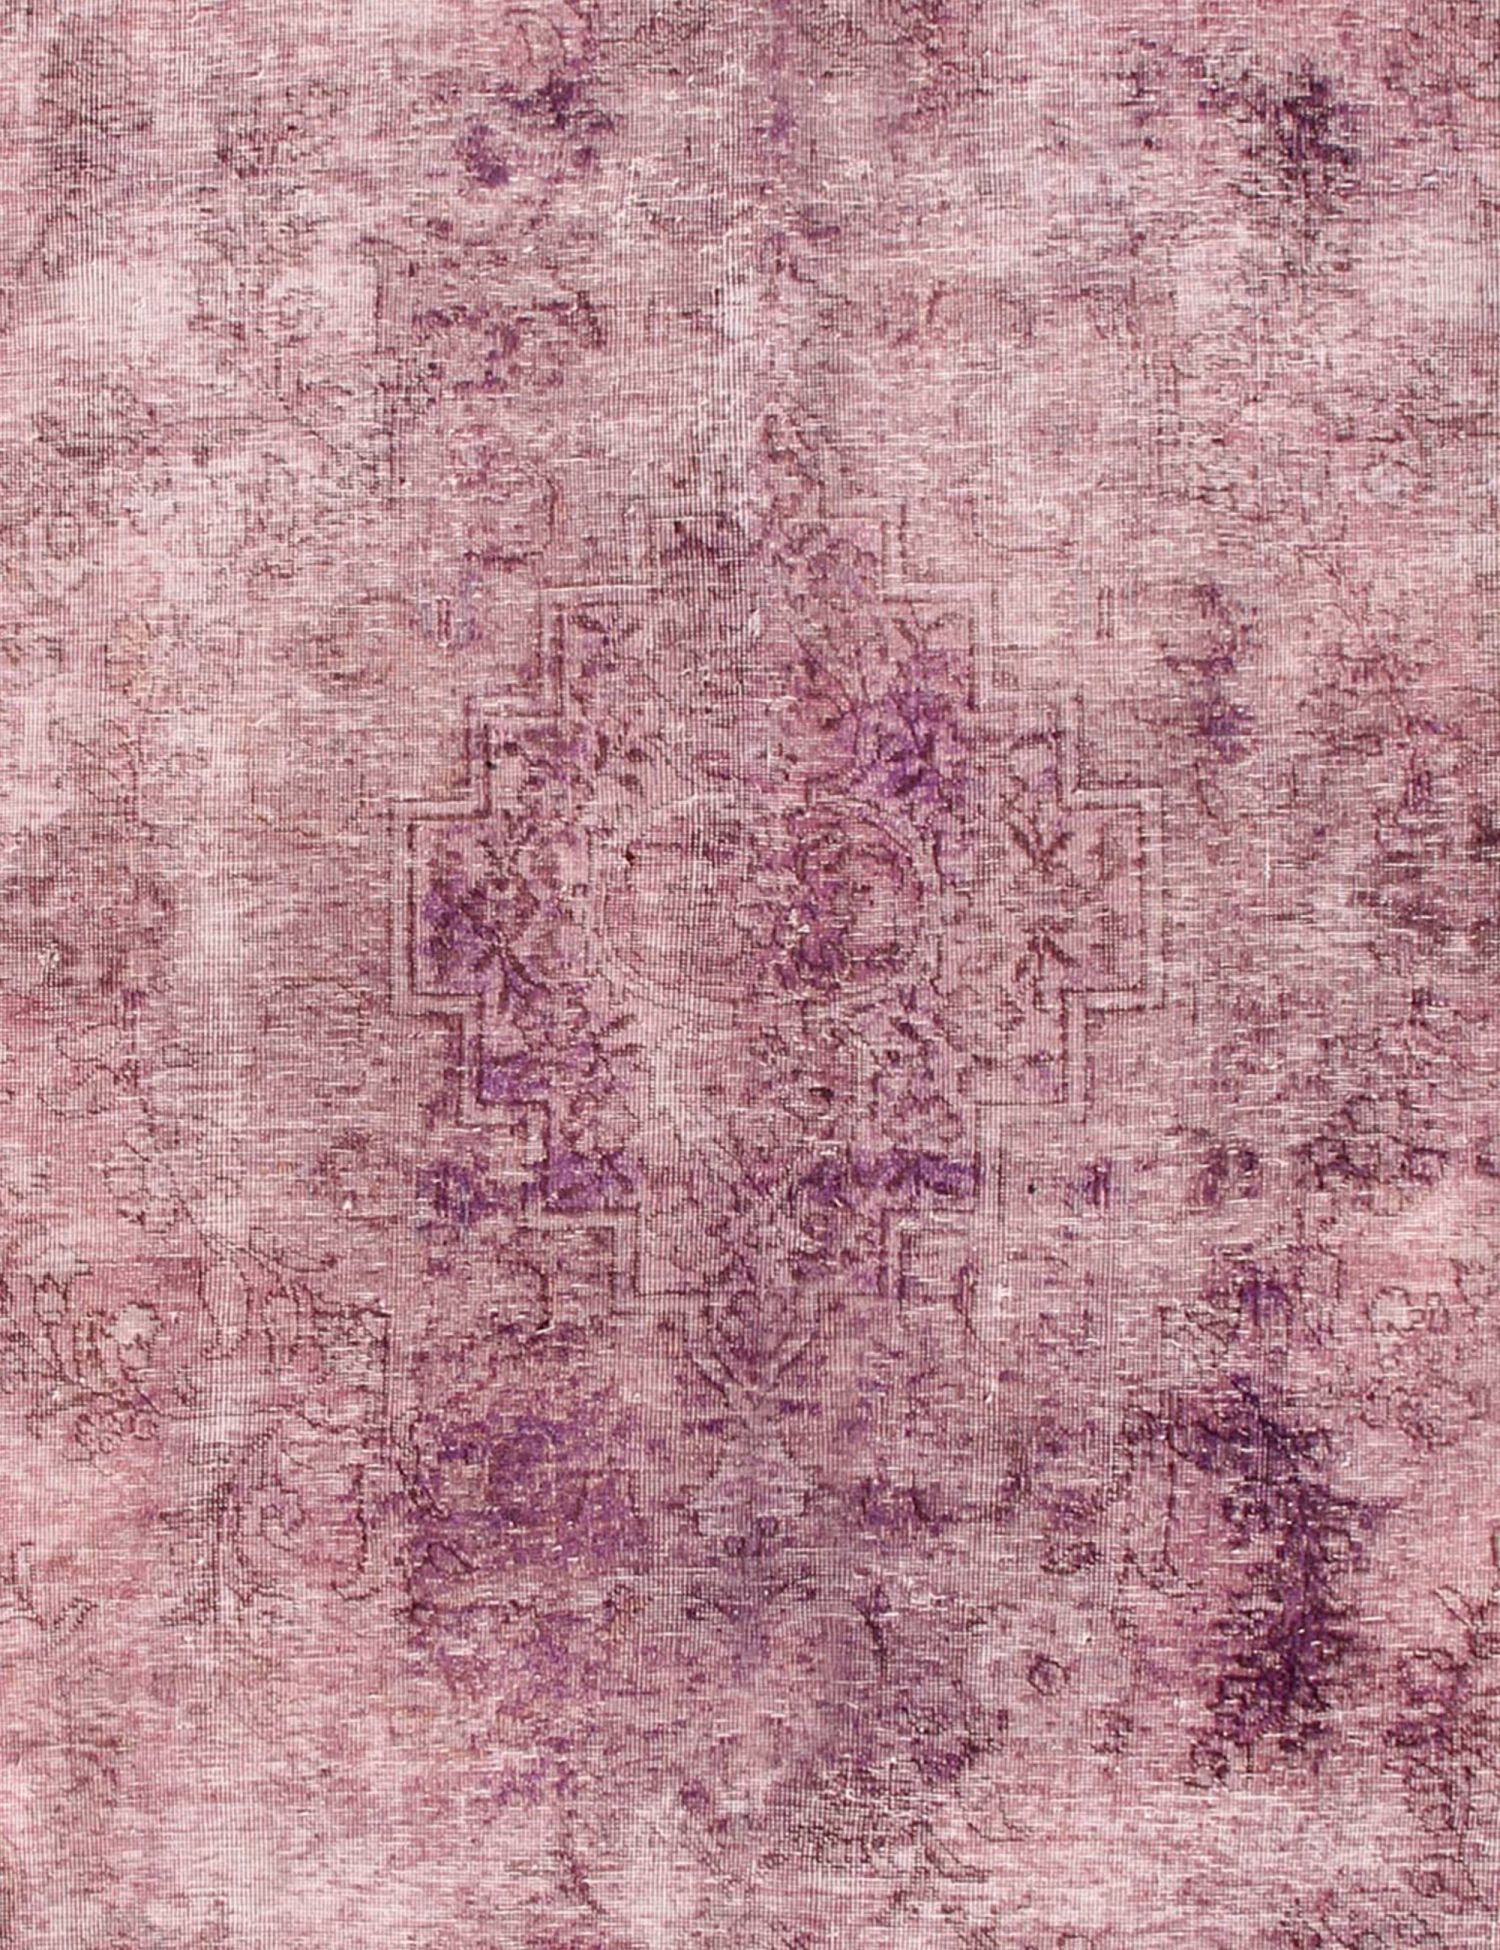 Persischer Vintage Teppich  lila <br/>220 x 220 cm